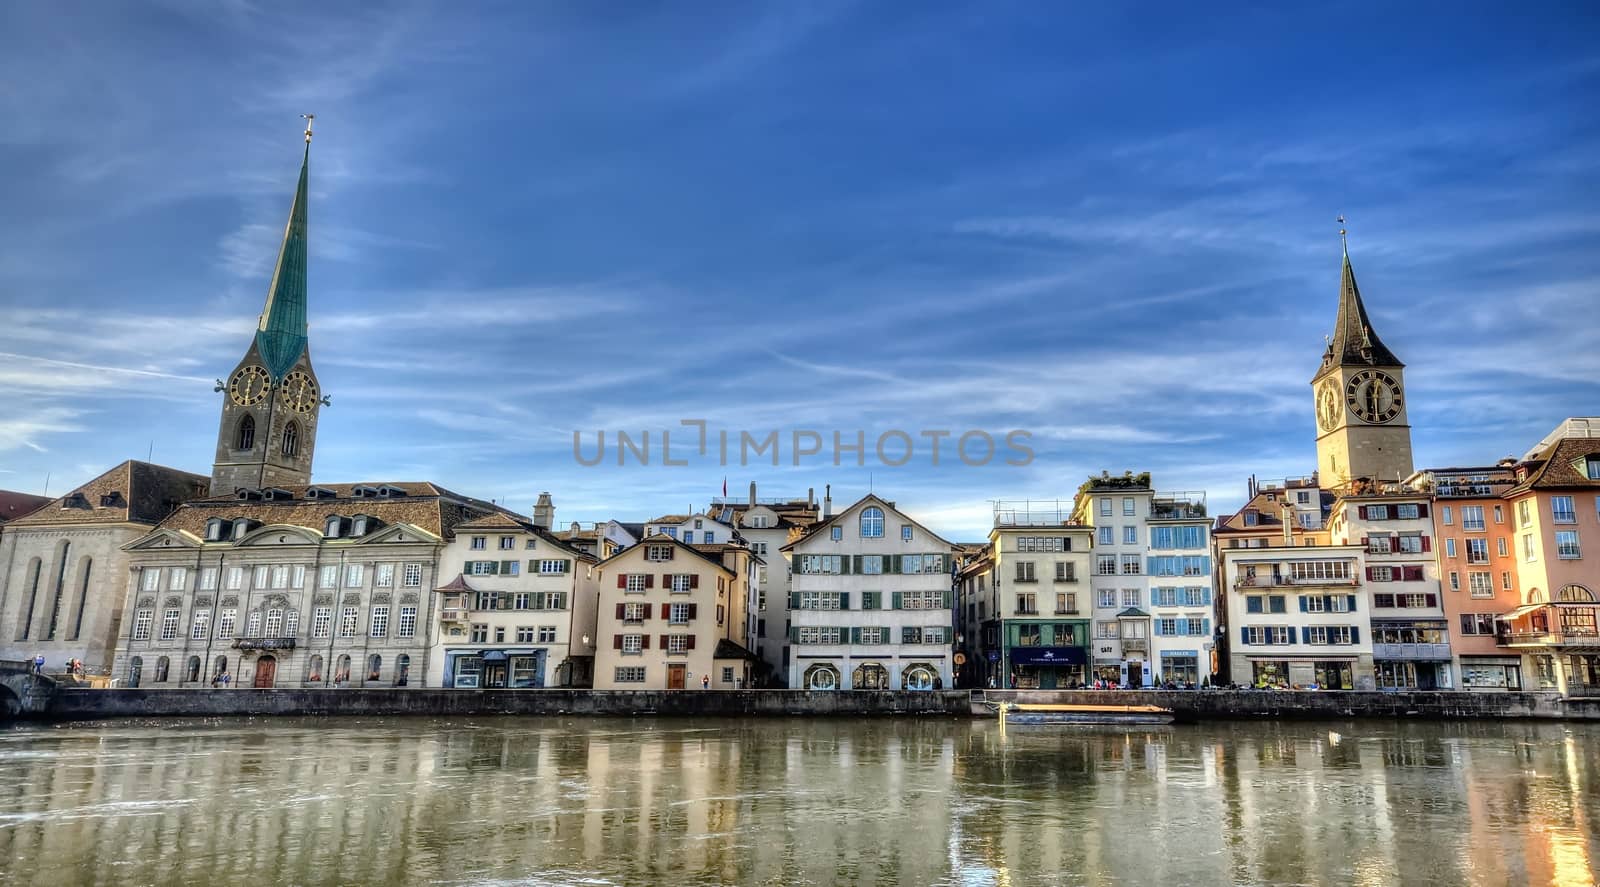 Center of Zurich, Switzerland by anderm